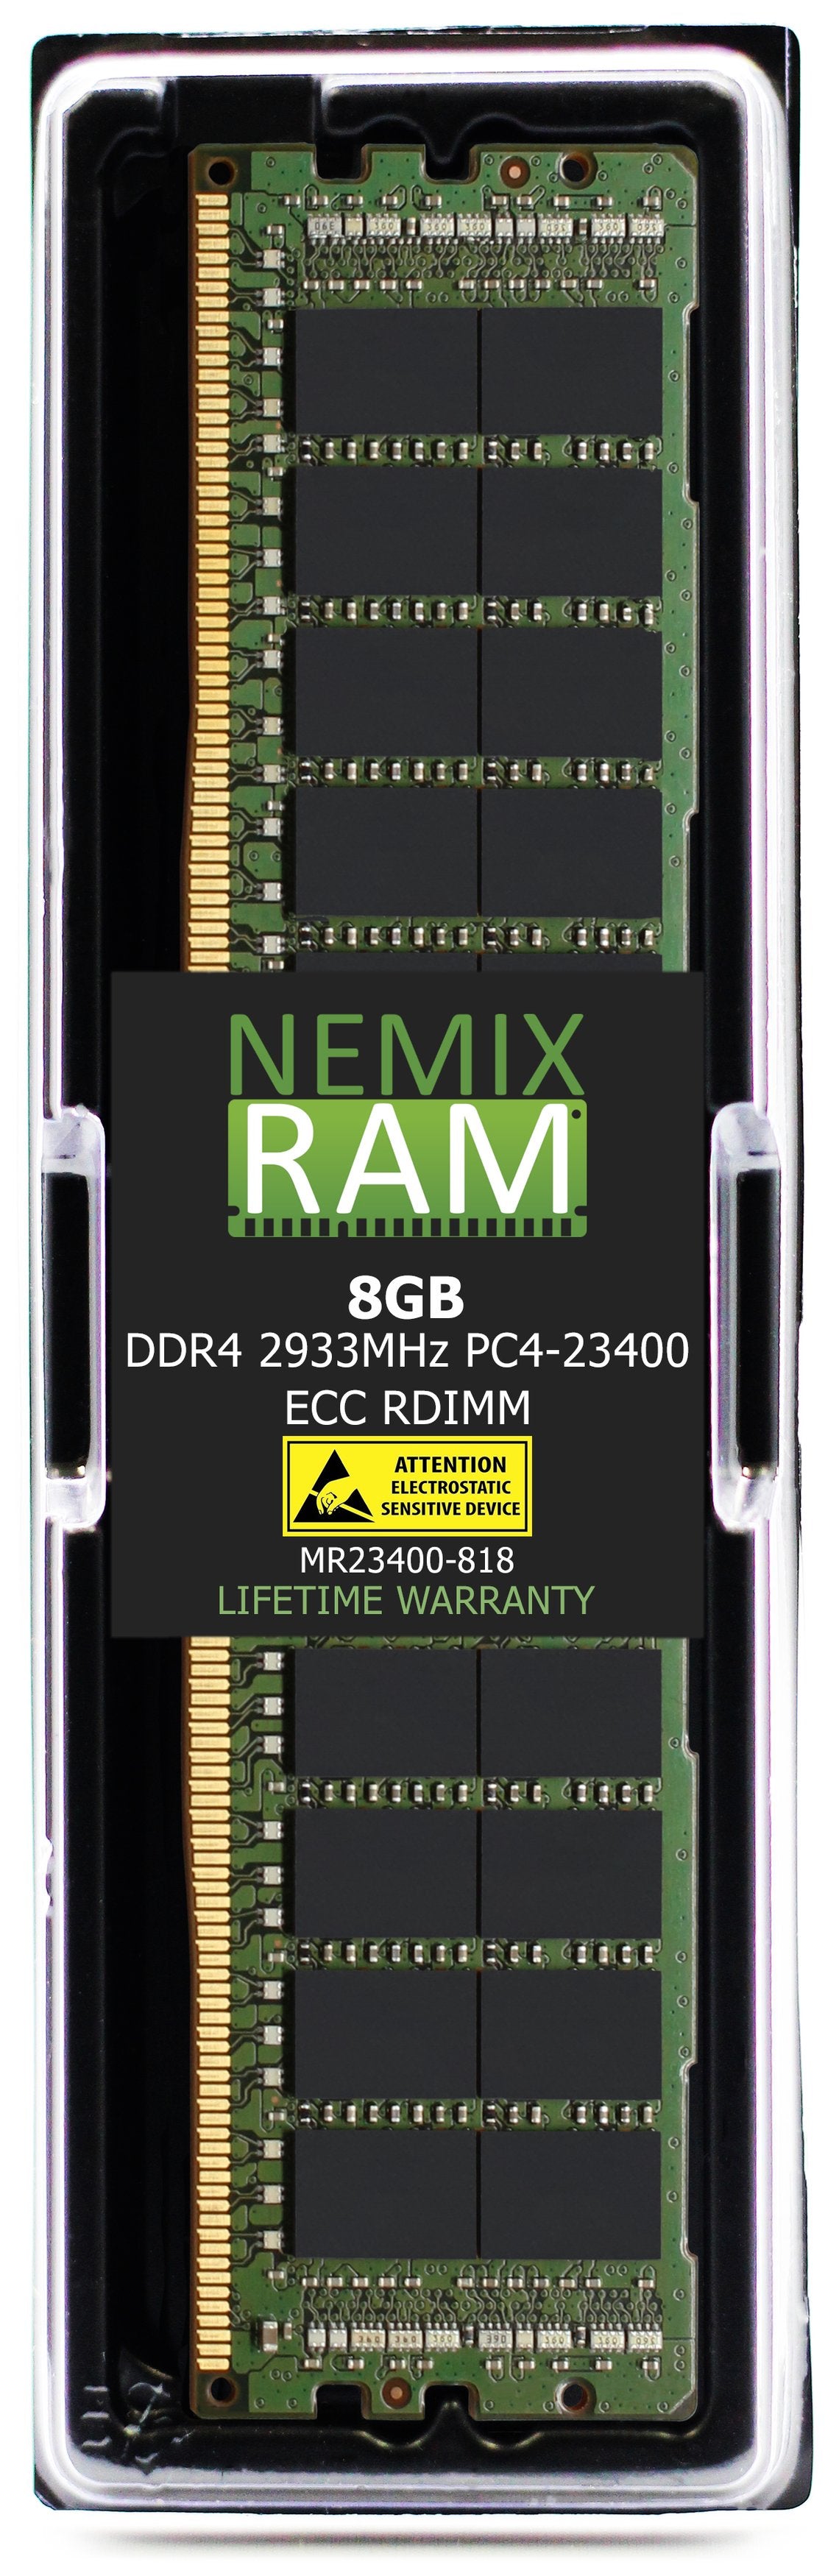 8GB DDR4 2933MHZ PC4-23400 RDIMM Compatible with Supermicro MEM-DR480L-CL01-ER29